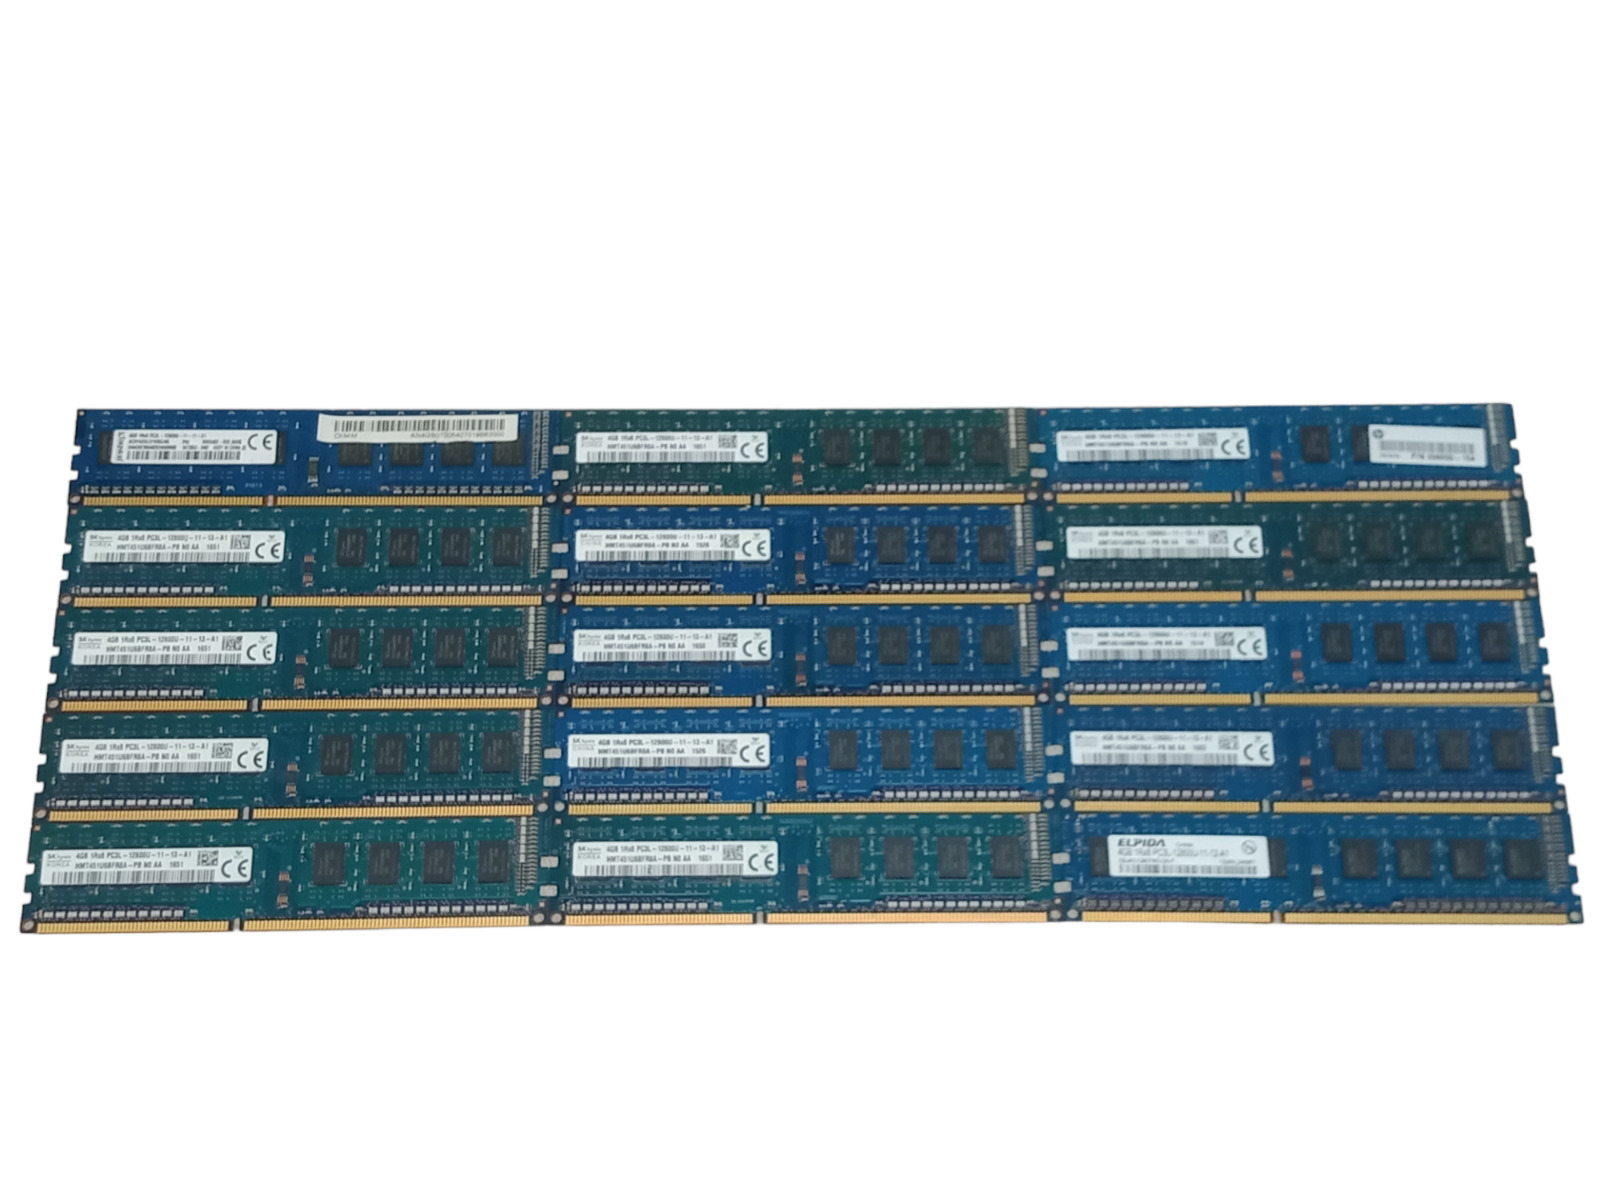 Kit x15 Kingston/SK hynix/Elpida 60GB (4GBx15) PC3L-12800U DDR3-1600 1Rx8 RAM